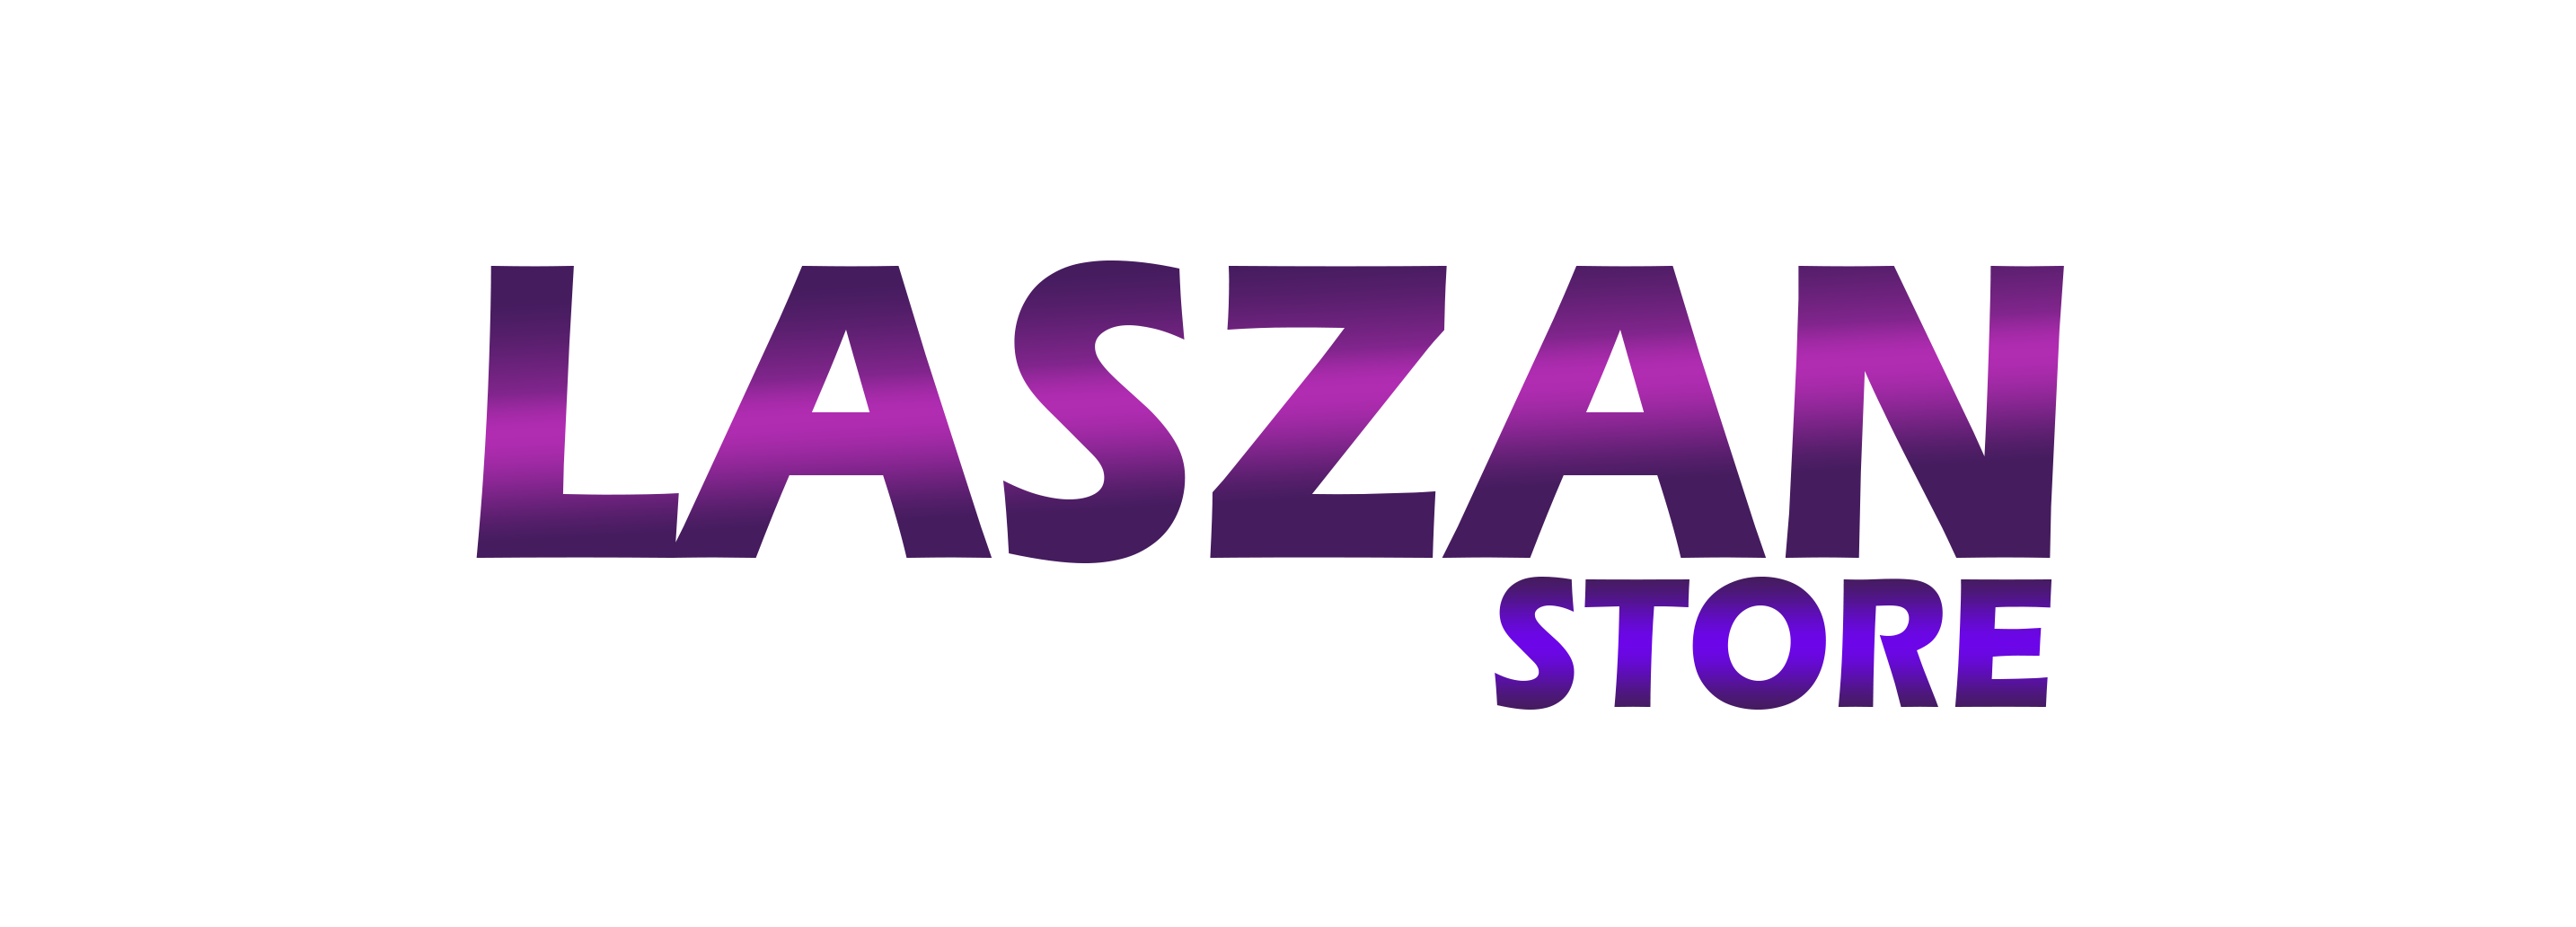 Laszan Store